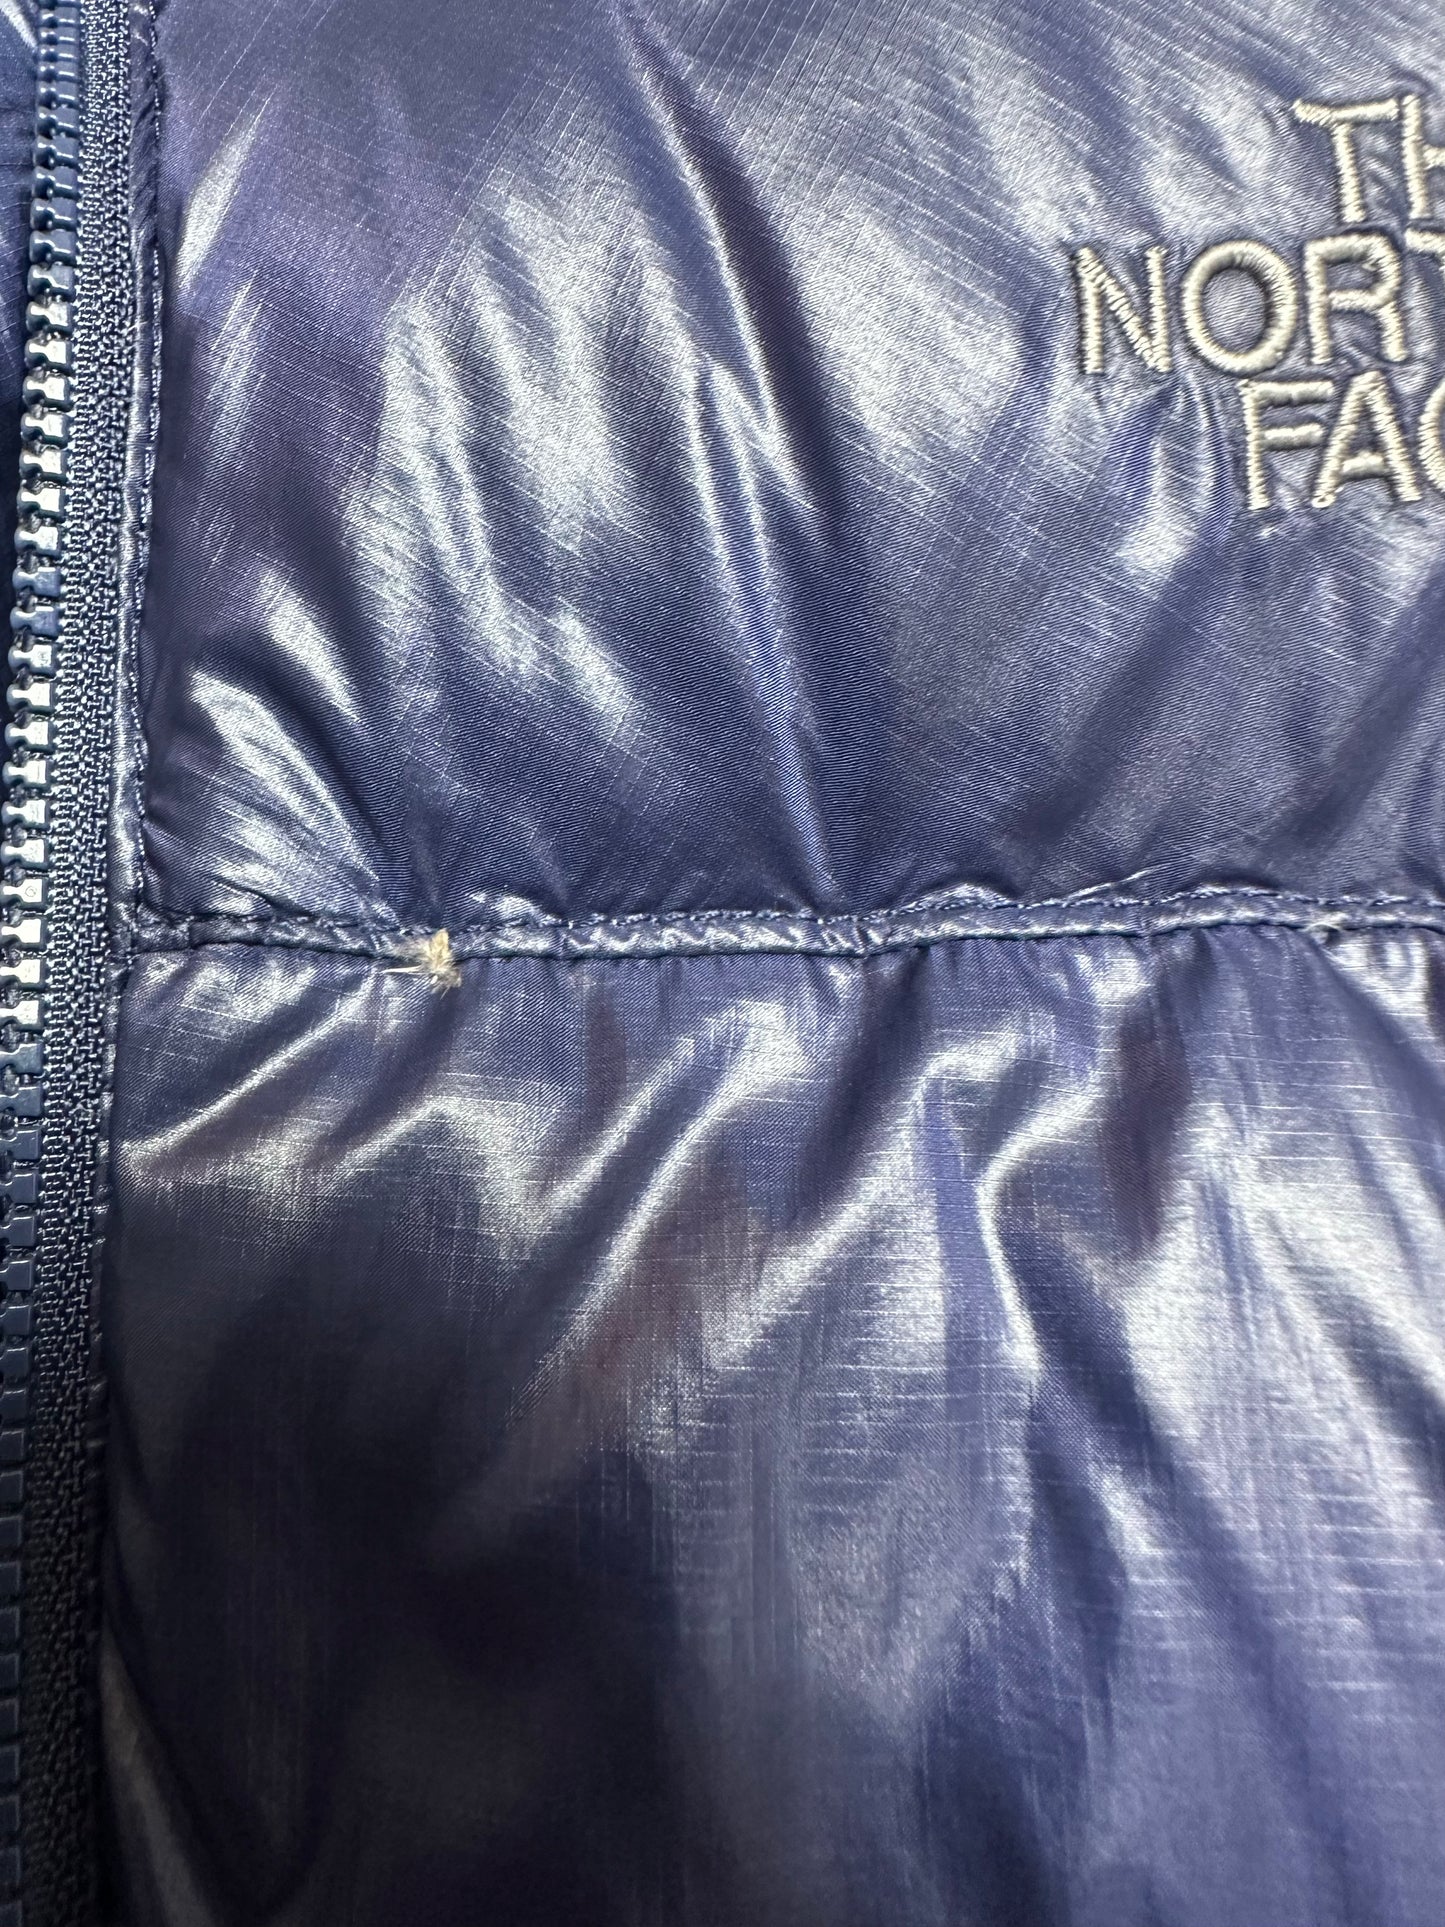 10025【THE NORTH FACE】ザノースフェイス メンズ サミットシリーズ  ダウンジャケット ネイビー 95